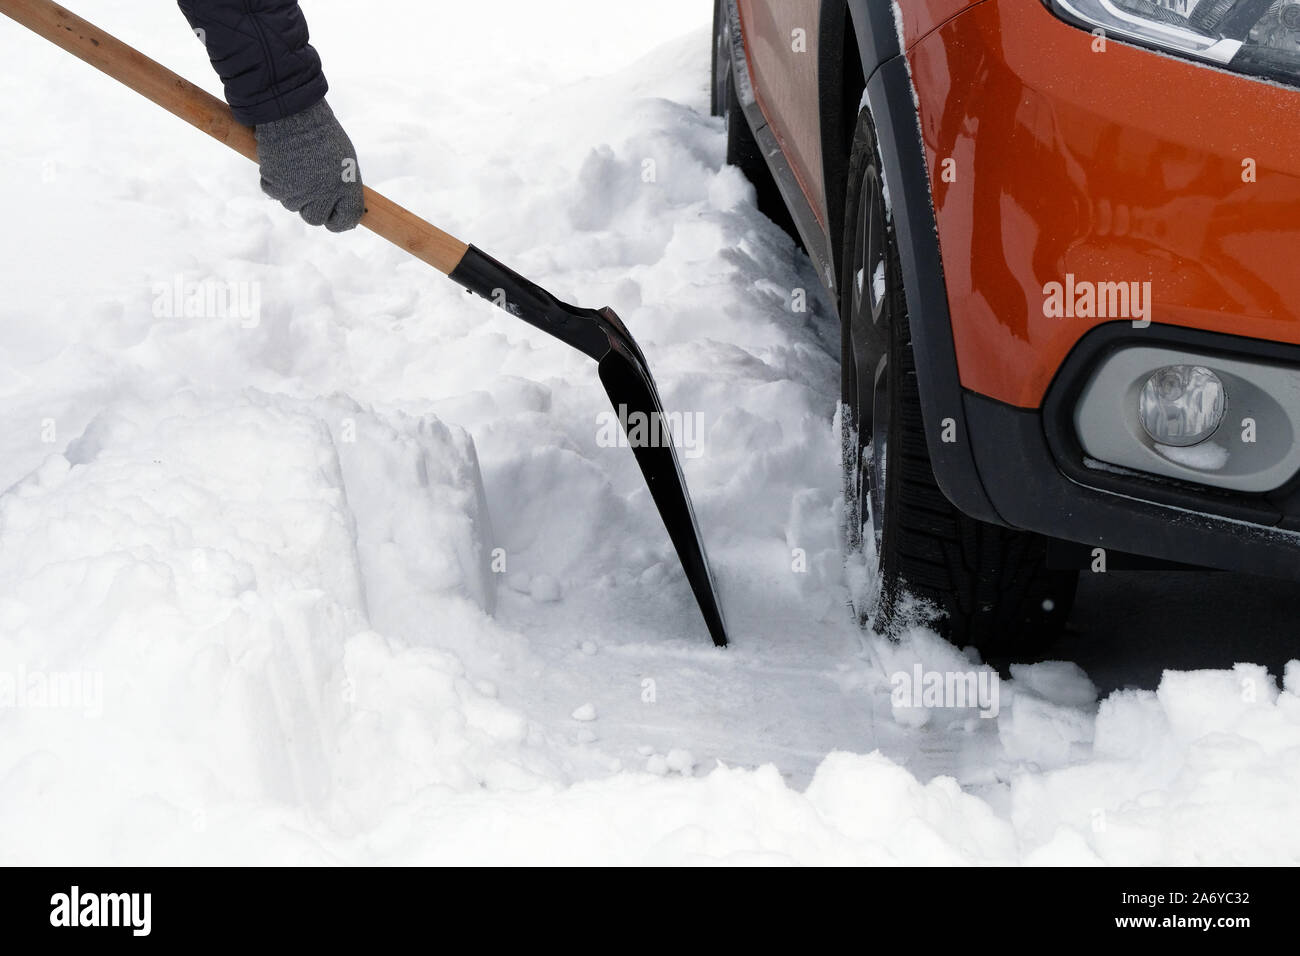 Homme avec une pelle à neige efface autour de voiture en stationnement en hiver après des chutes de neige. Pelle à main. Problèmes d'hiver des automobilistes. Banque D'Images